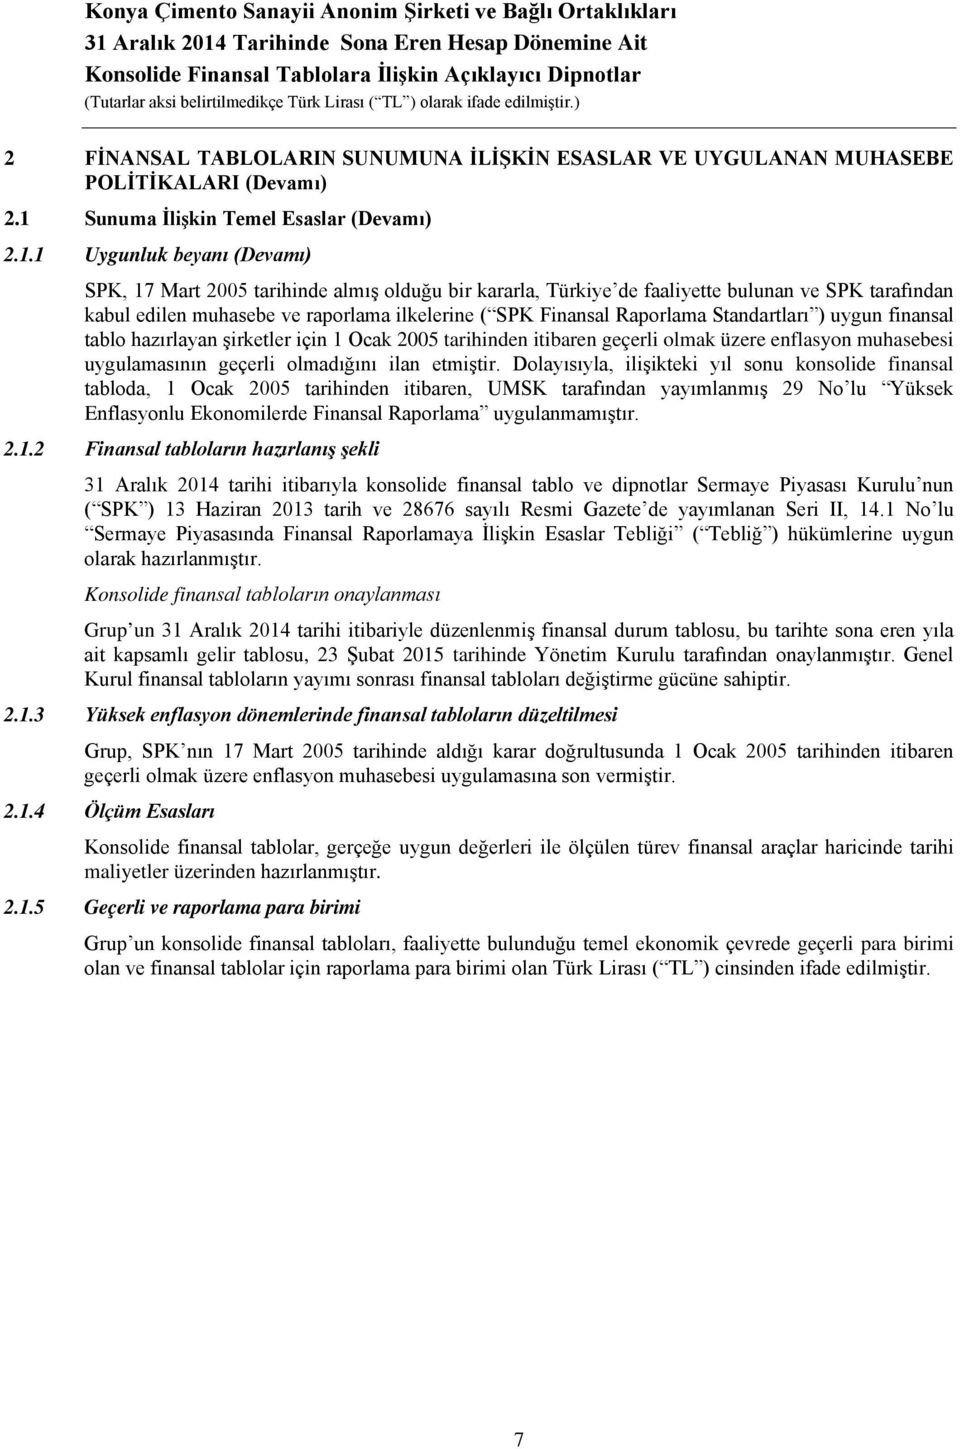 1 Uygunluk beyanı (Devamı) SPK, 17 Mart 2005 tarihinde almış olduğu bir kararla, Türkiye de faaliyette bulunan ve SPK tarafından kabul edilen muhasebe ve raporlama ilkelerine ( SPK Finansal Raporlama